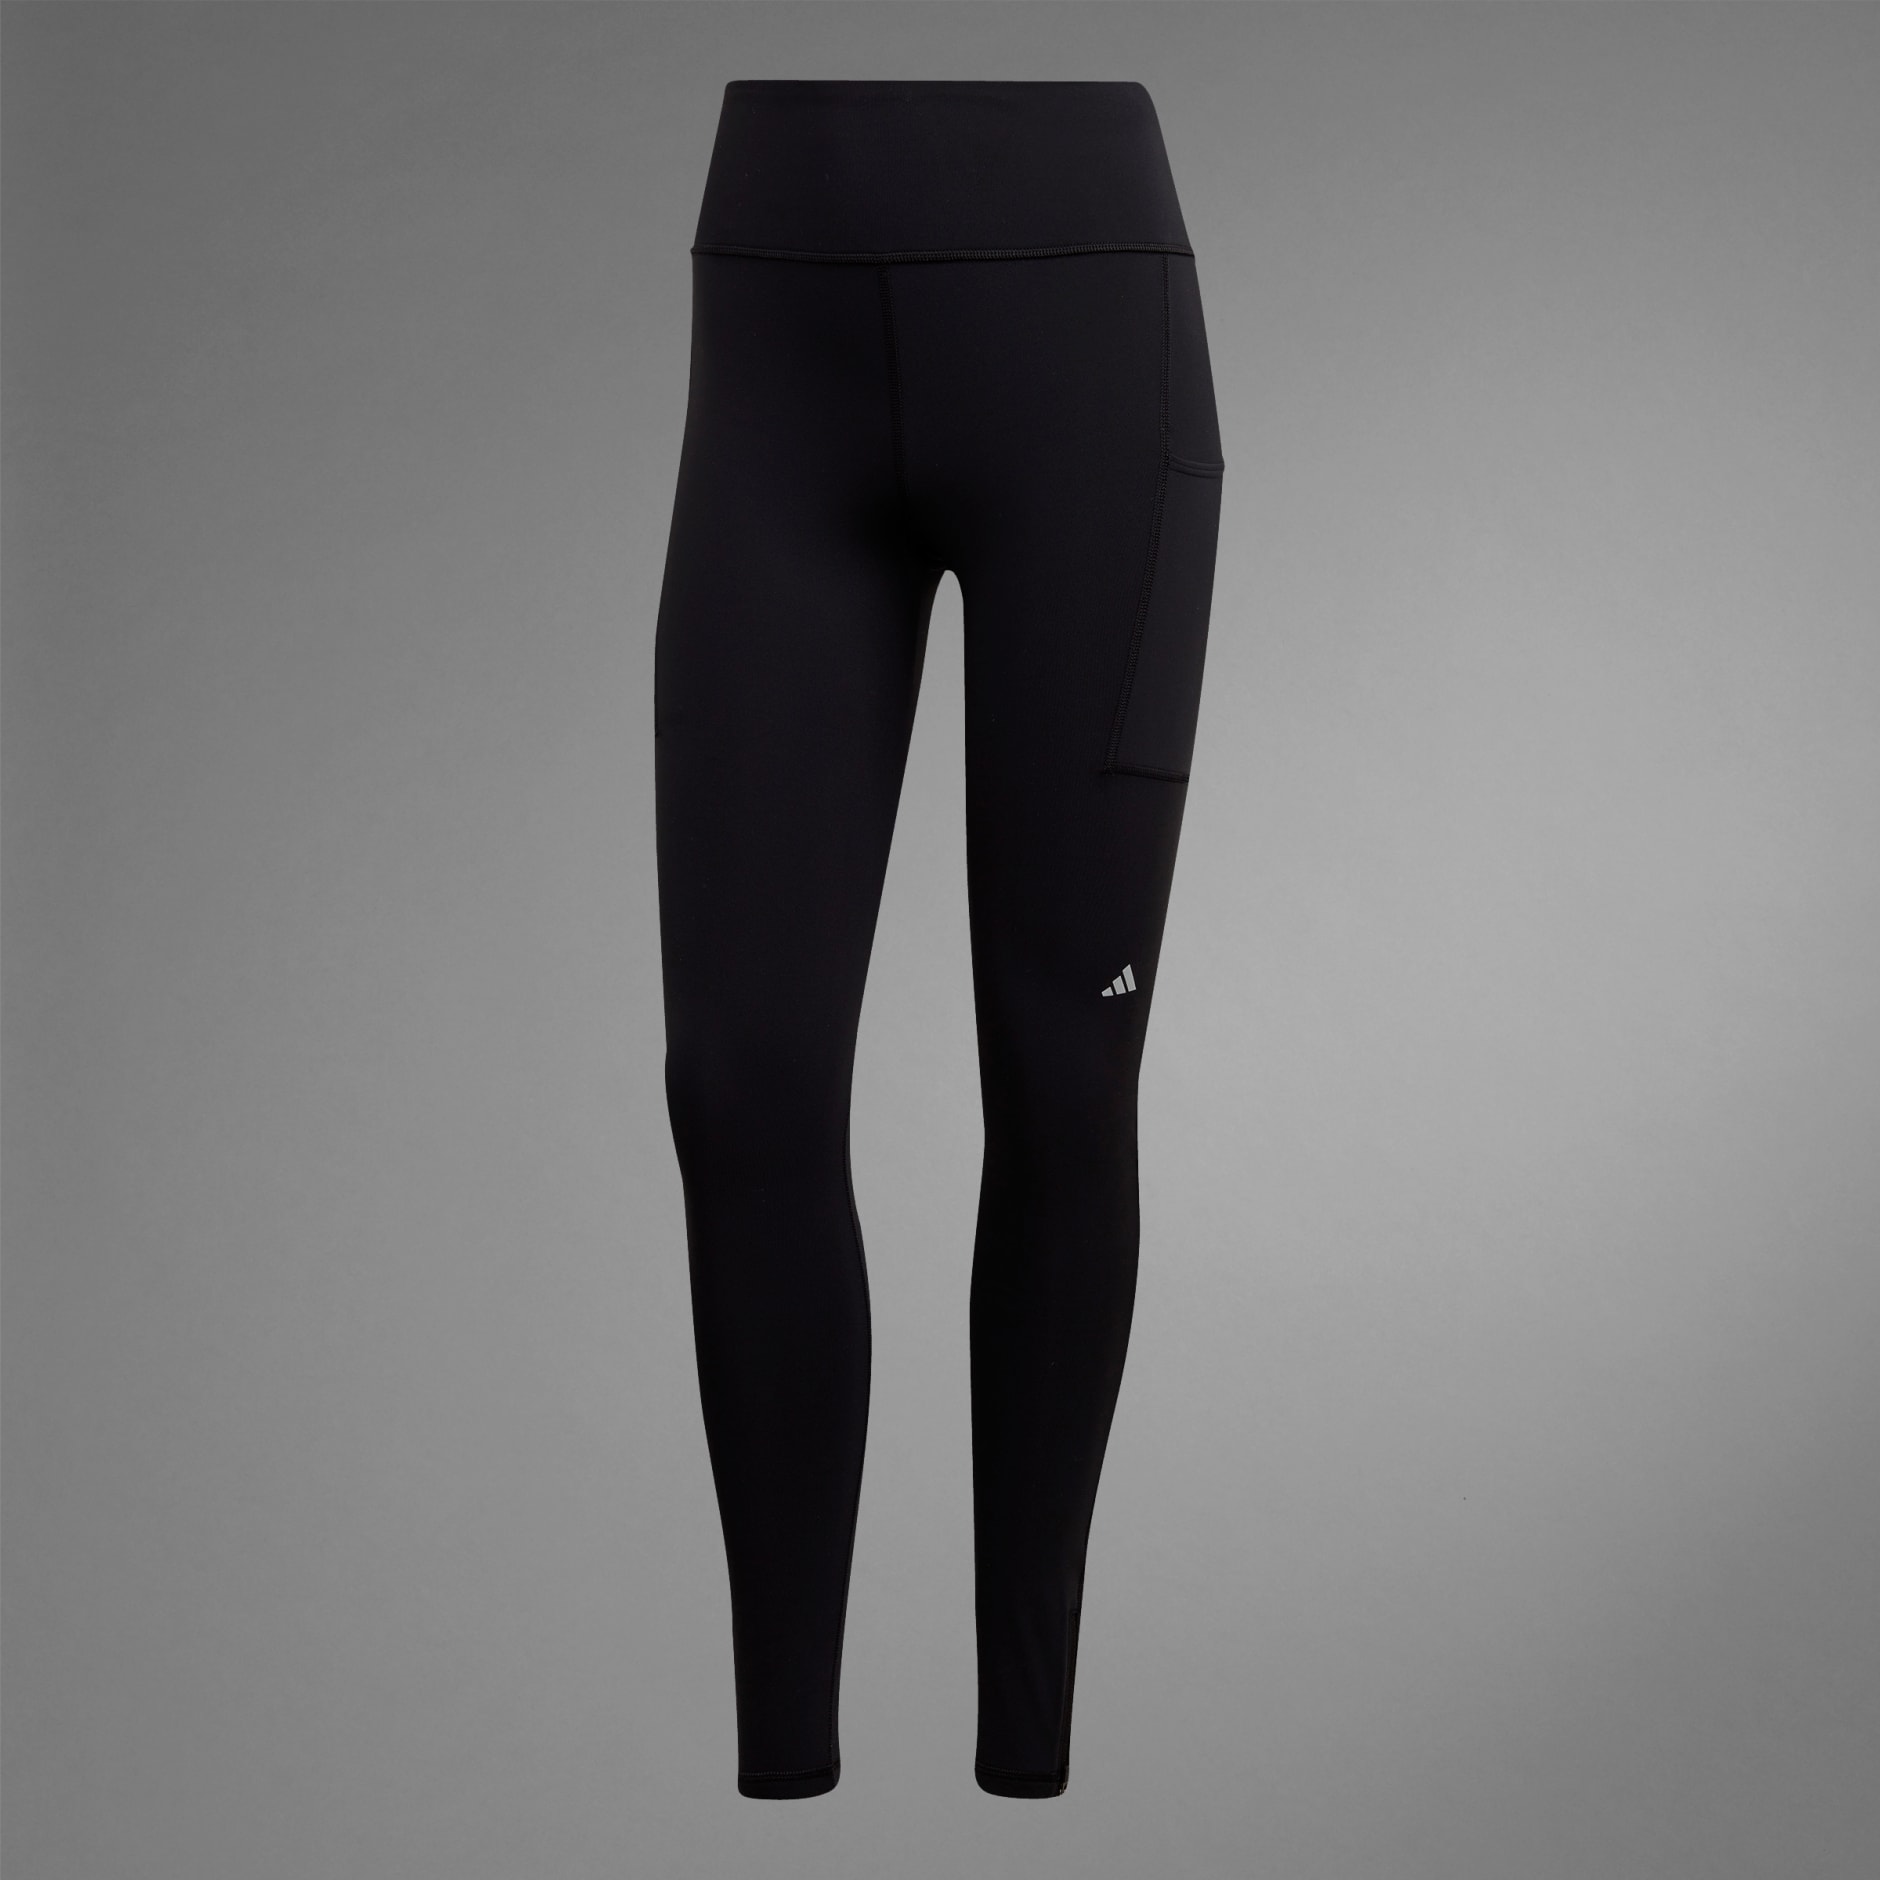 Women's Clothing - Ultimate Running Winter Long Leggings - Black